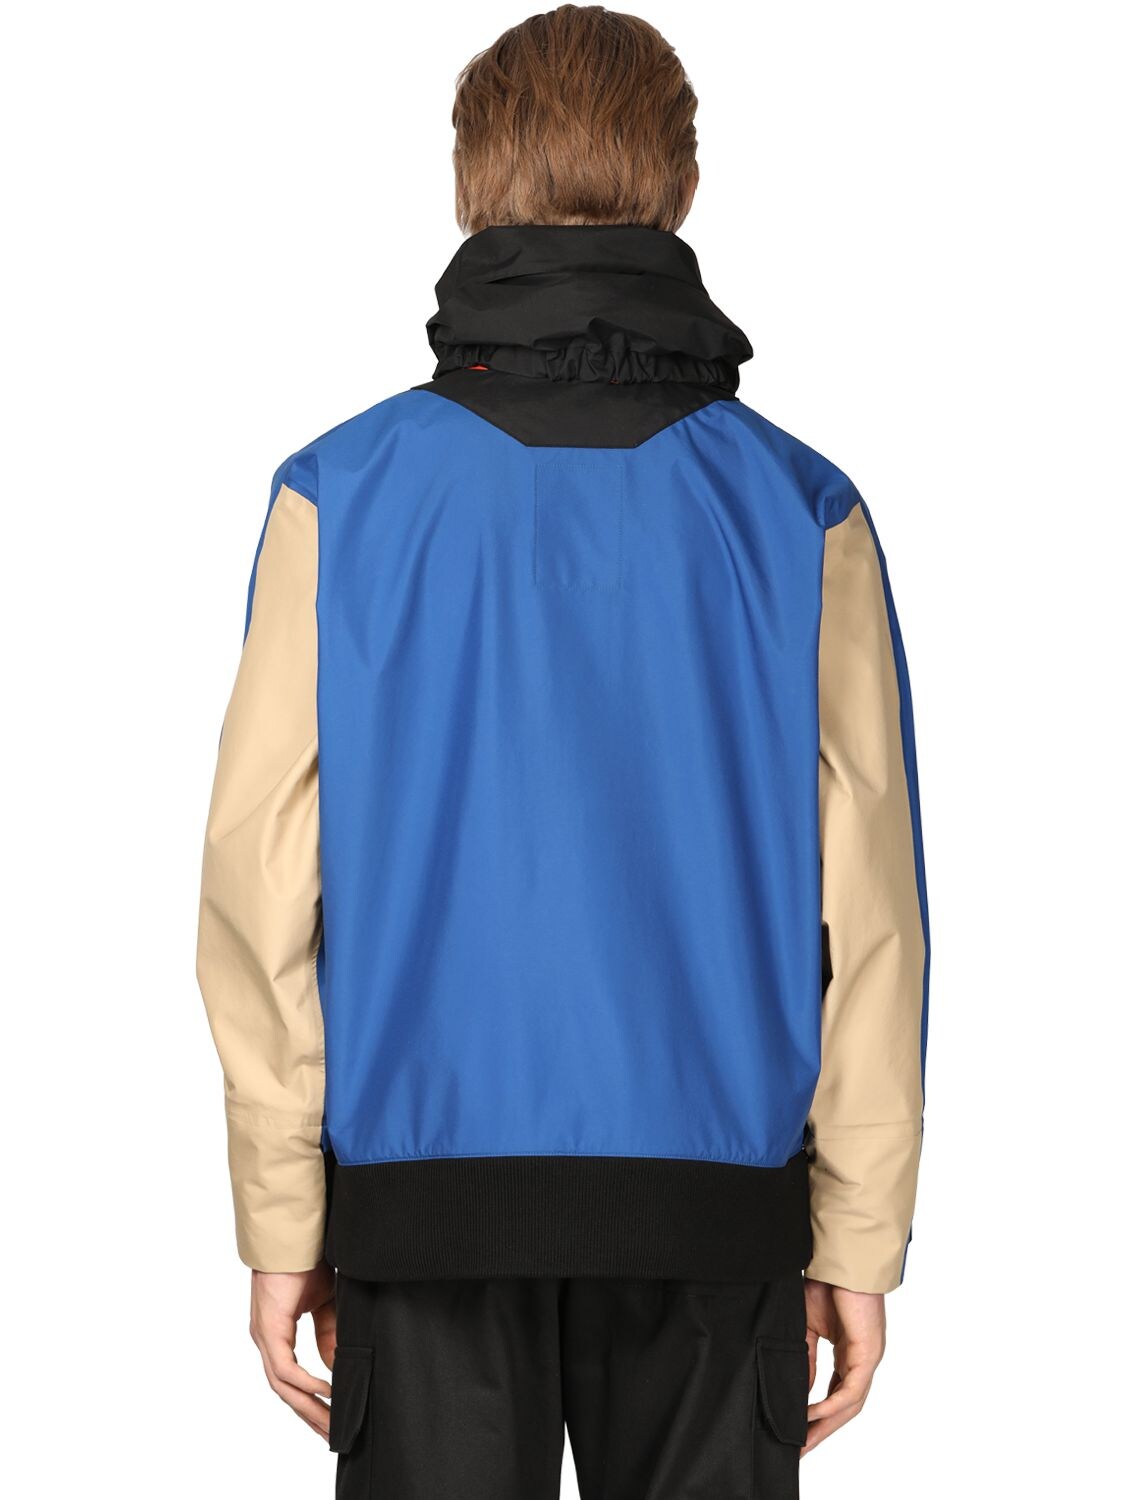 LOEWE Anagram Jacquard Fleece Zip Jacket | Smart Closet